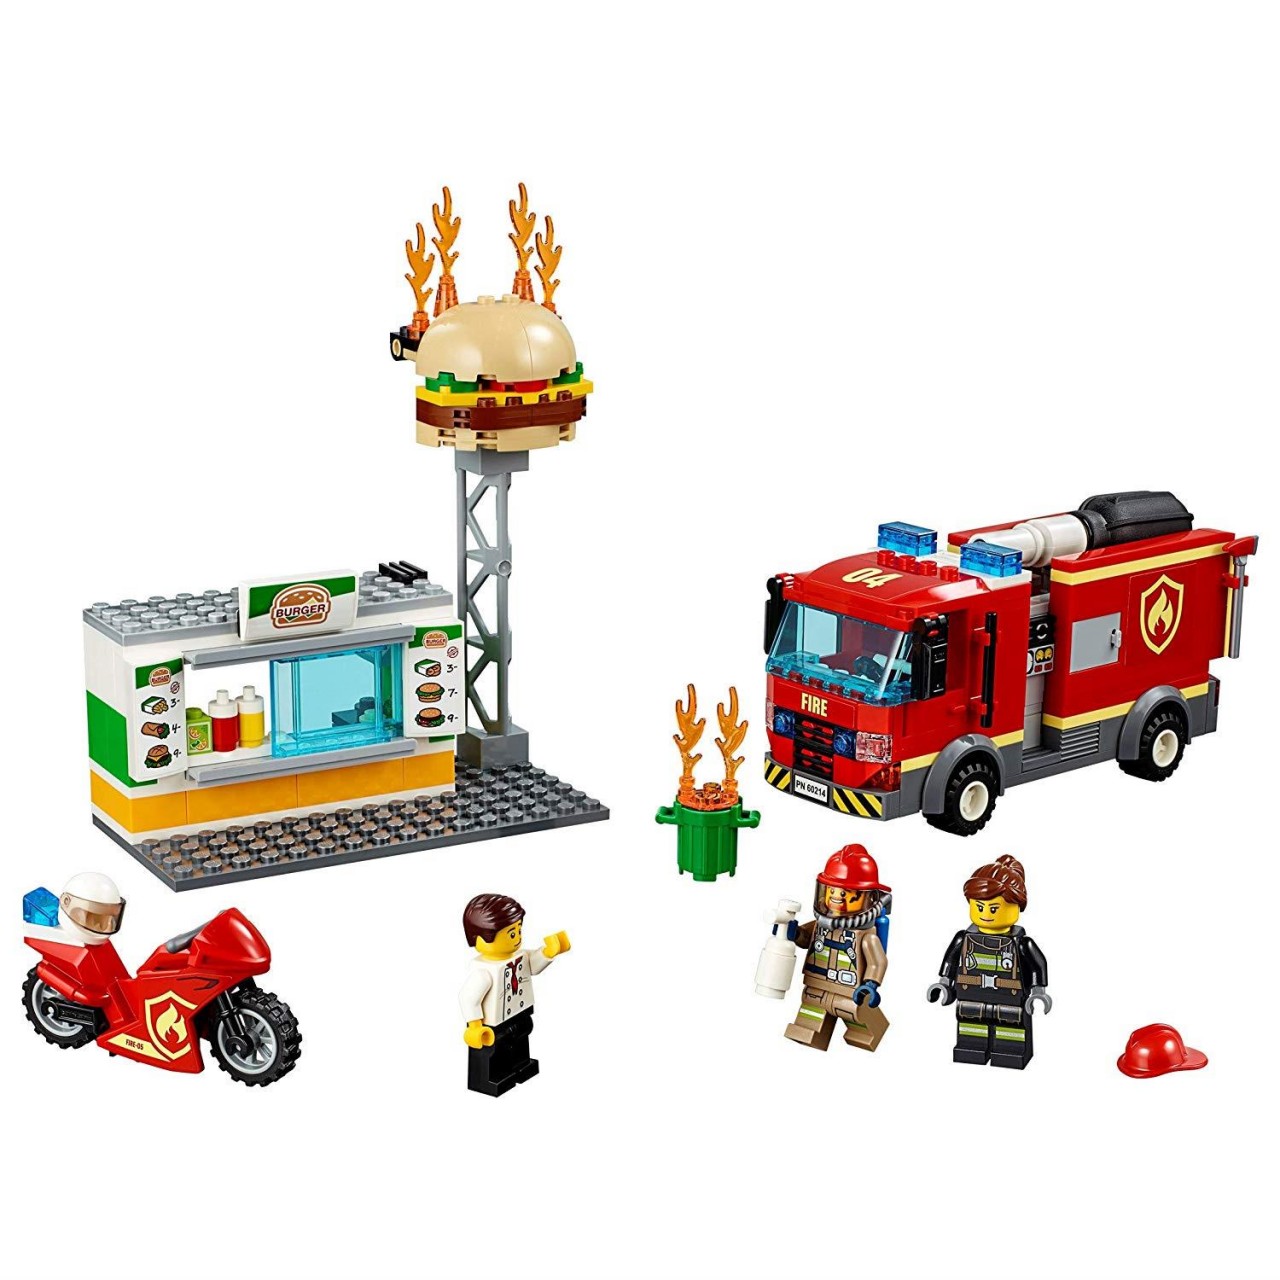 LEGO CITY 60214 Feuerwehreinsatz im Burger-Restaurant